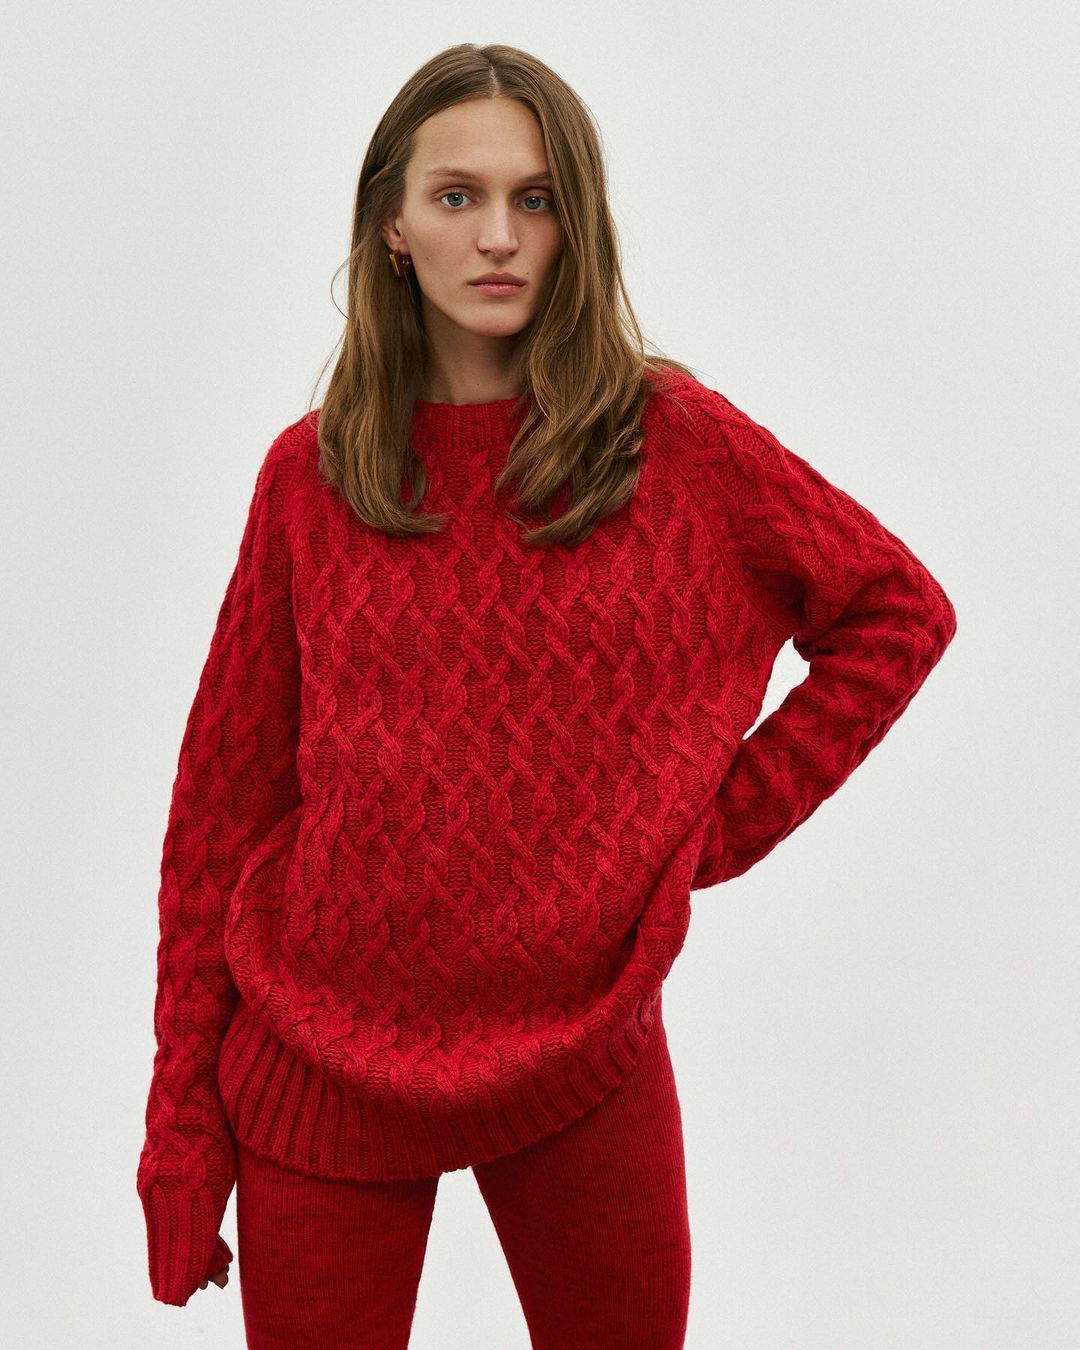 модный свитер осень зима 2021 2022 косы объем украинский бренд красный